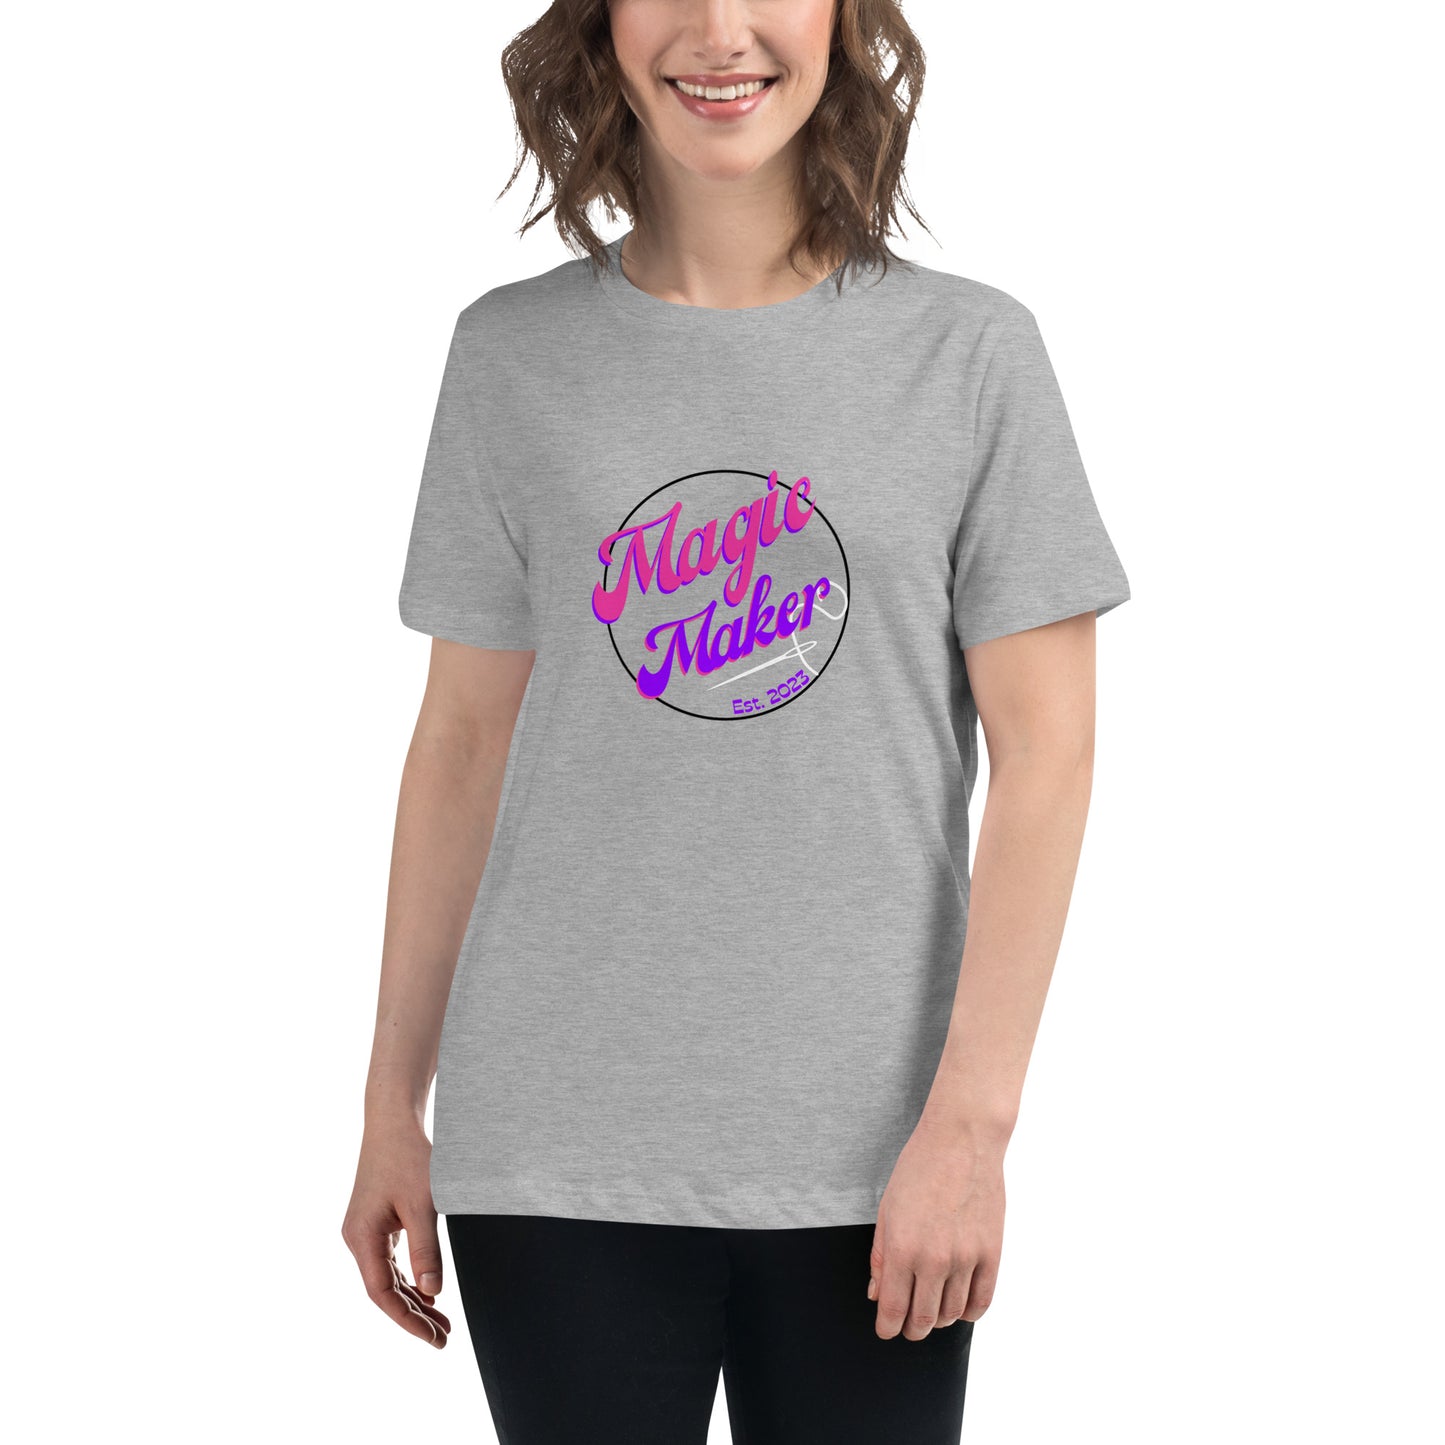 Magic Maker Women's Relaxed T-Shirt